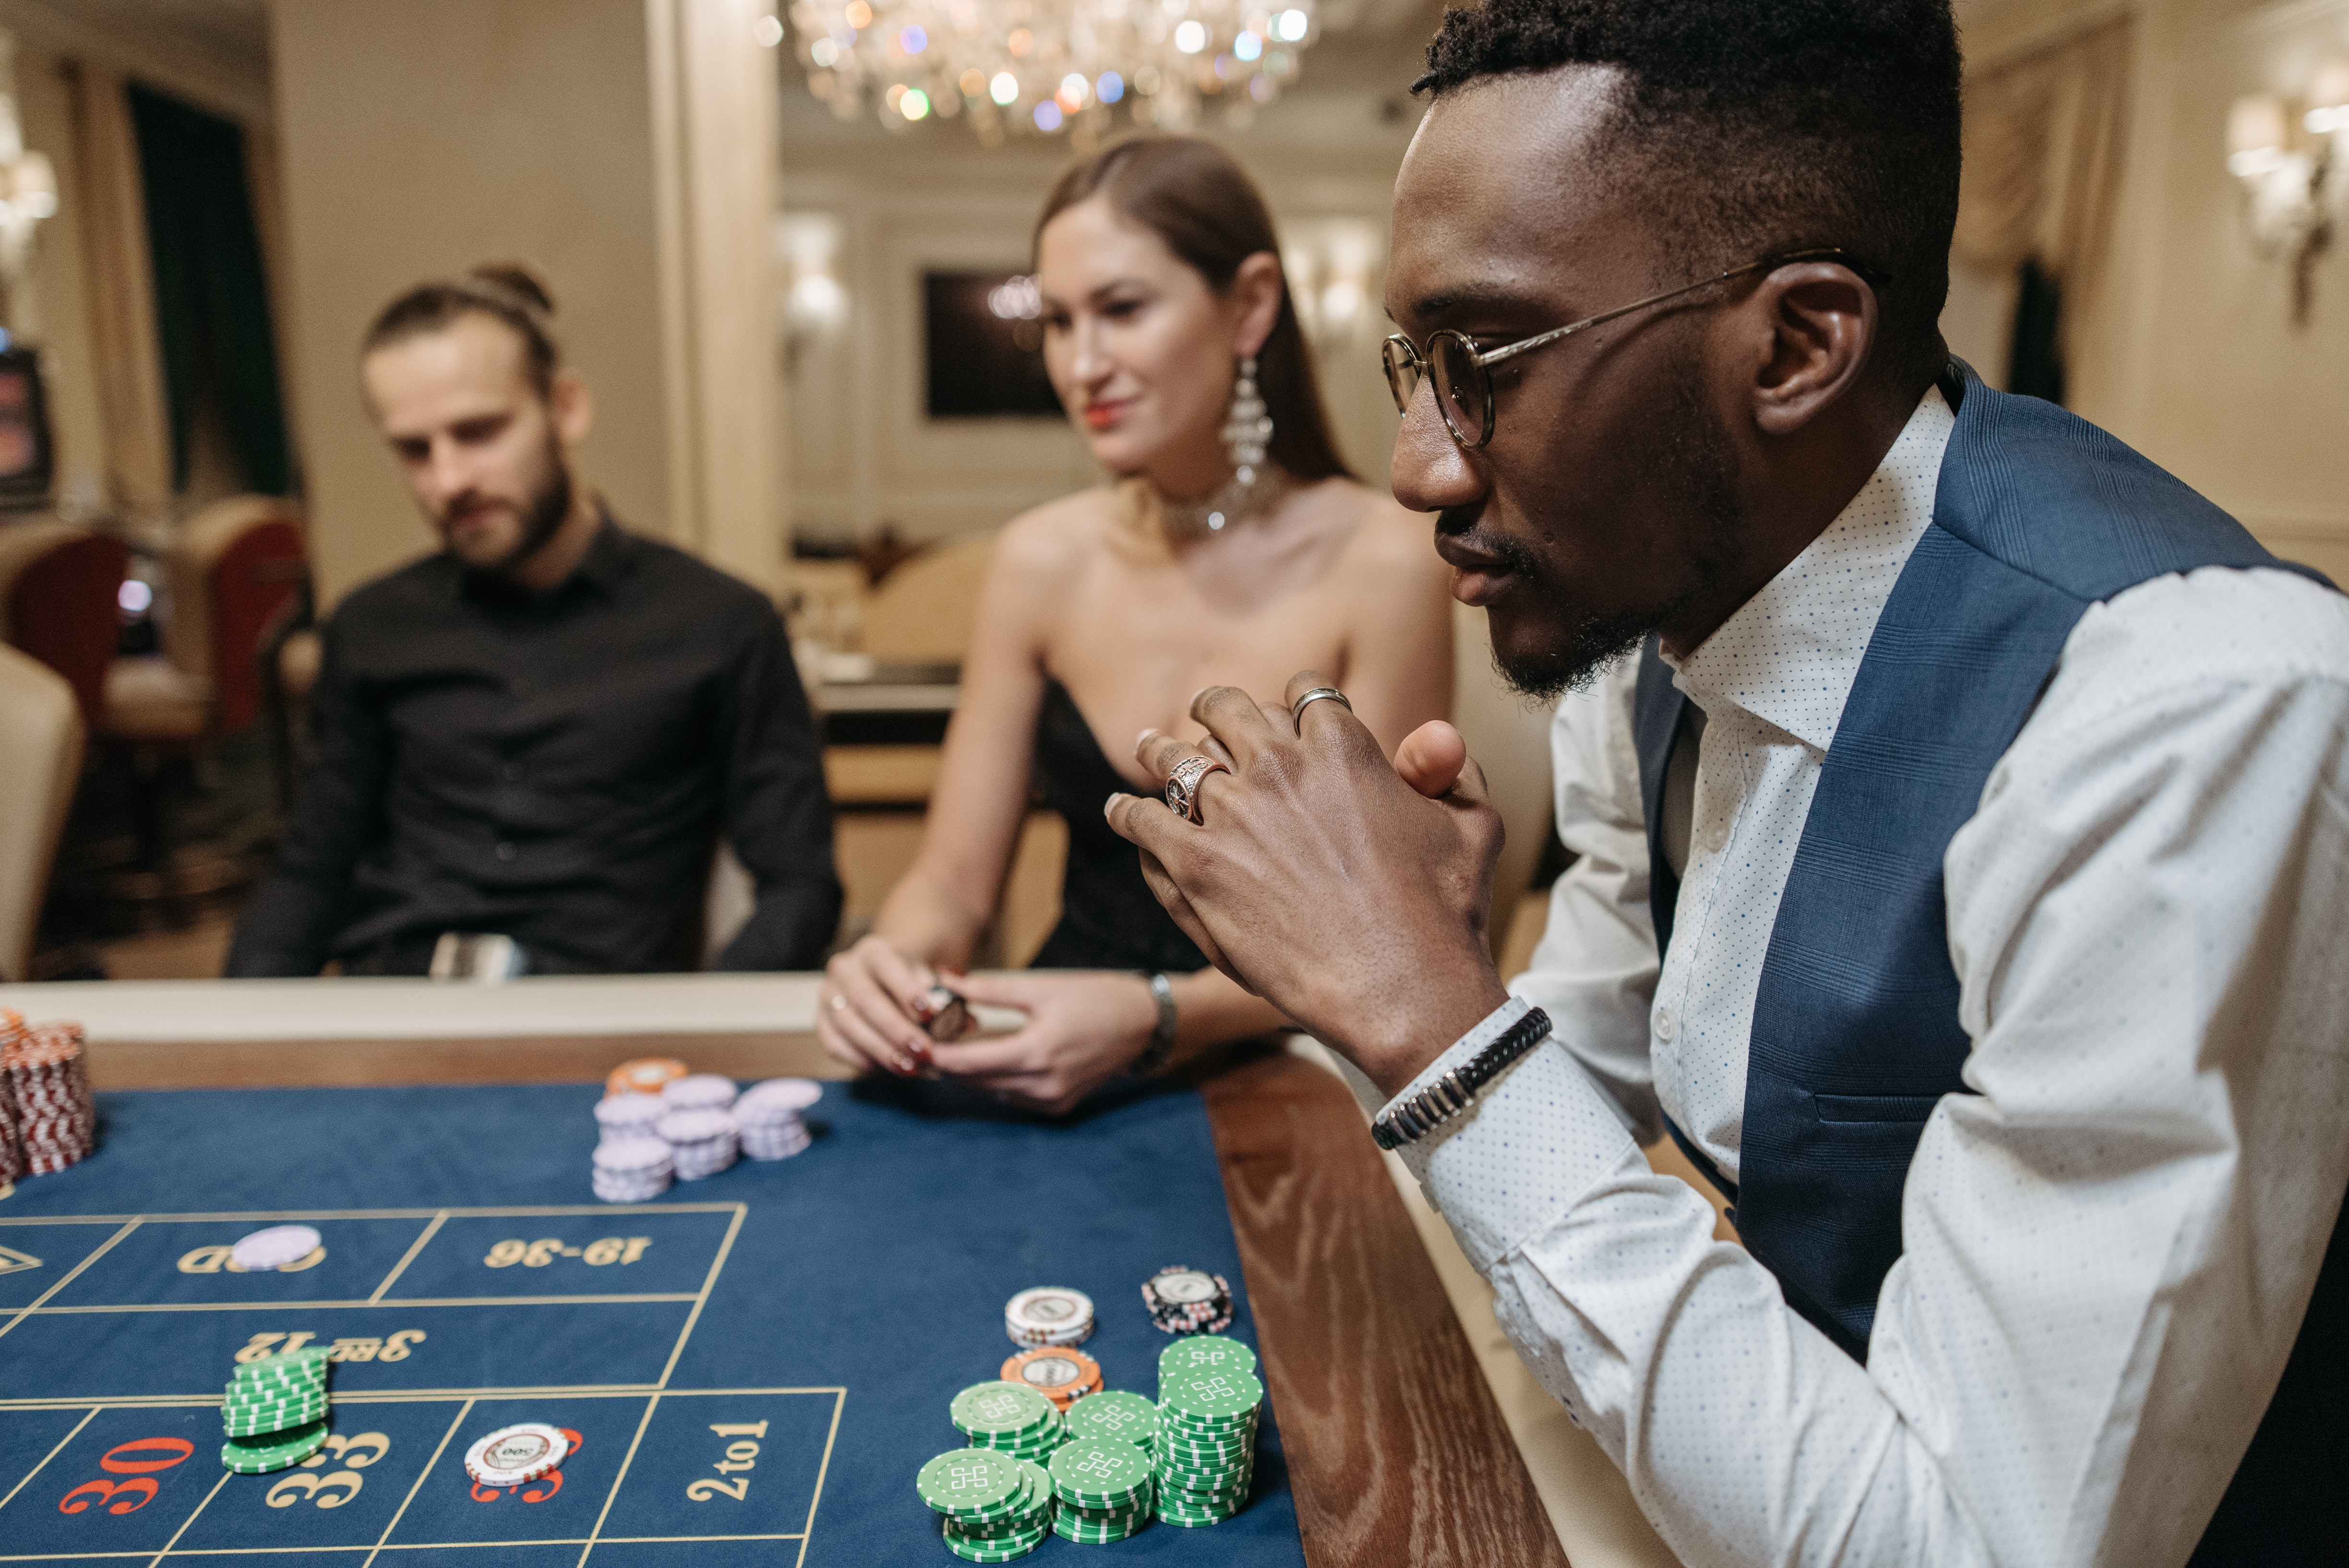 Casino din Lej et udstyret pokerbord | Evenses